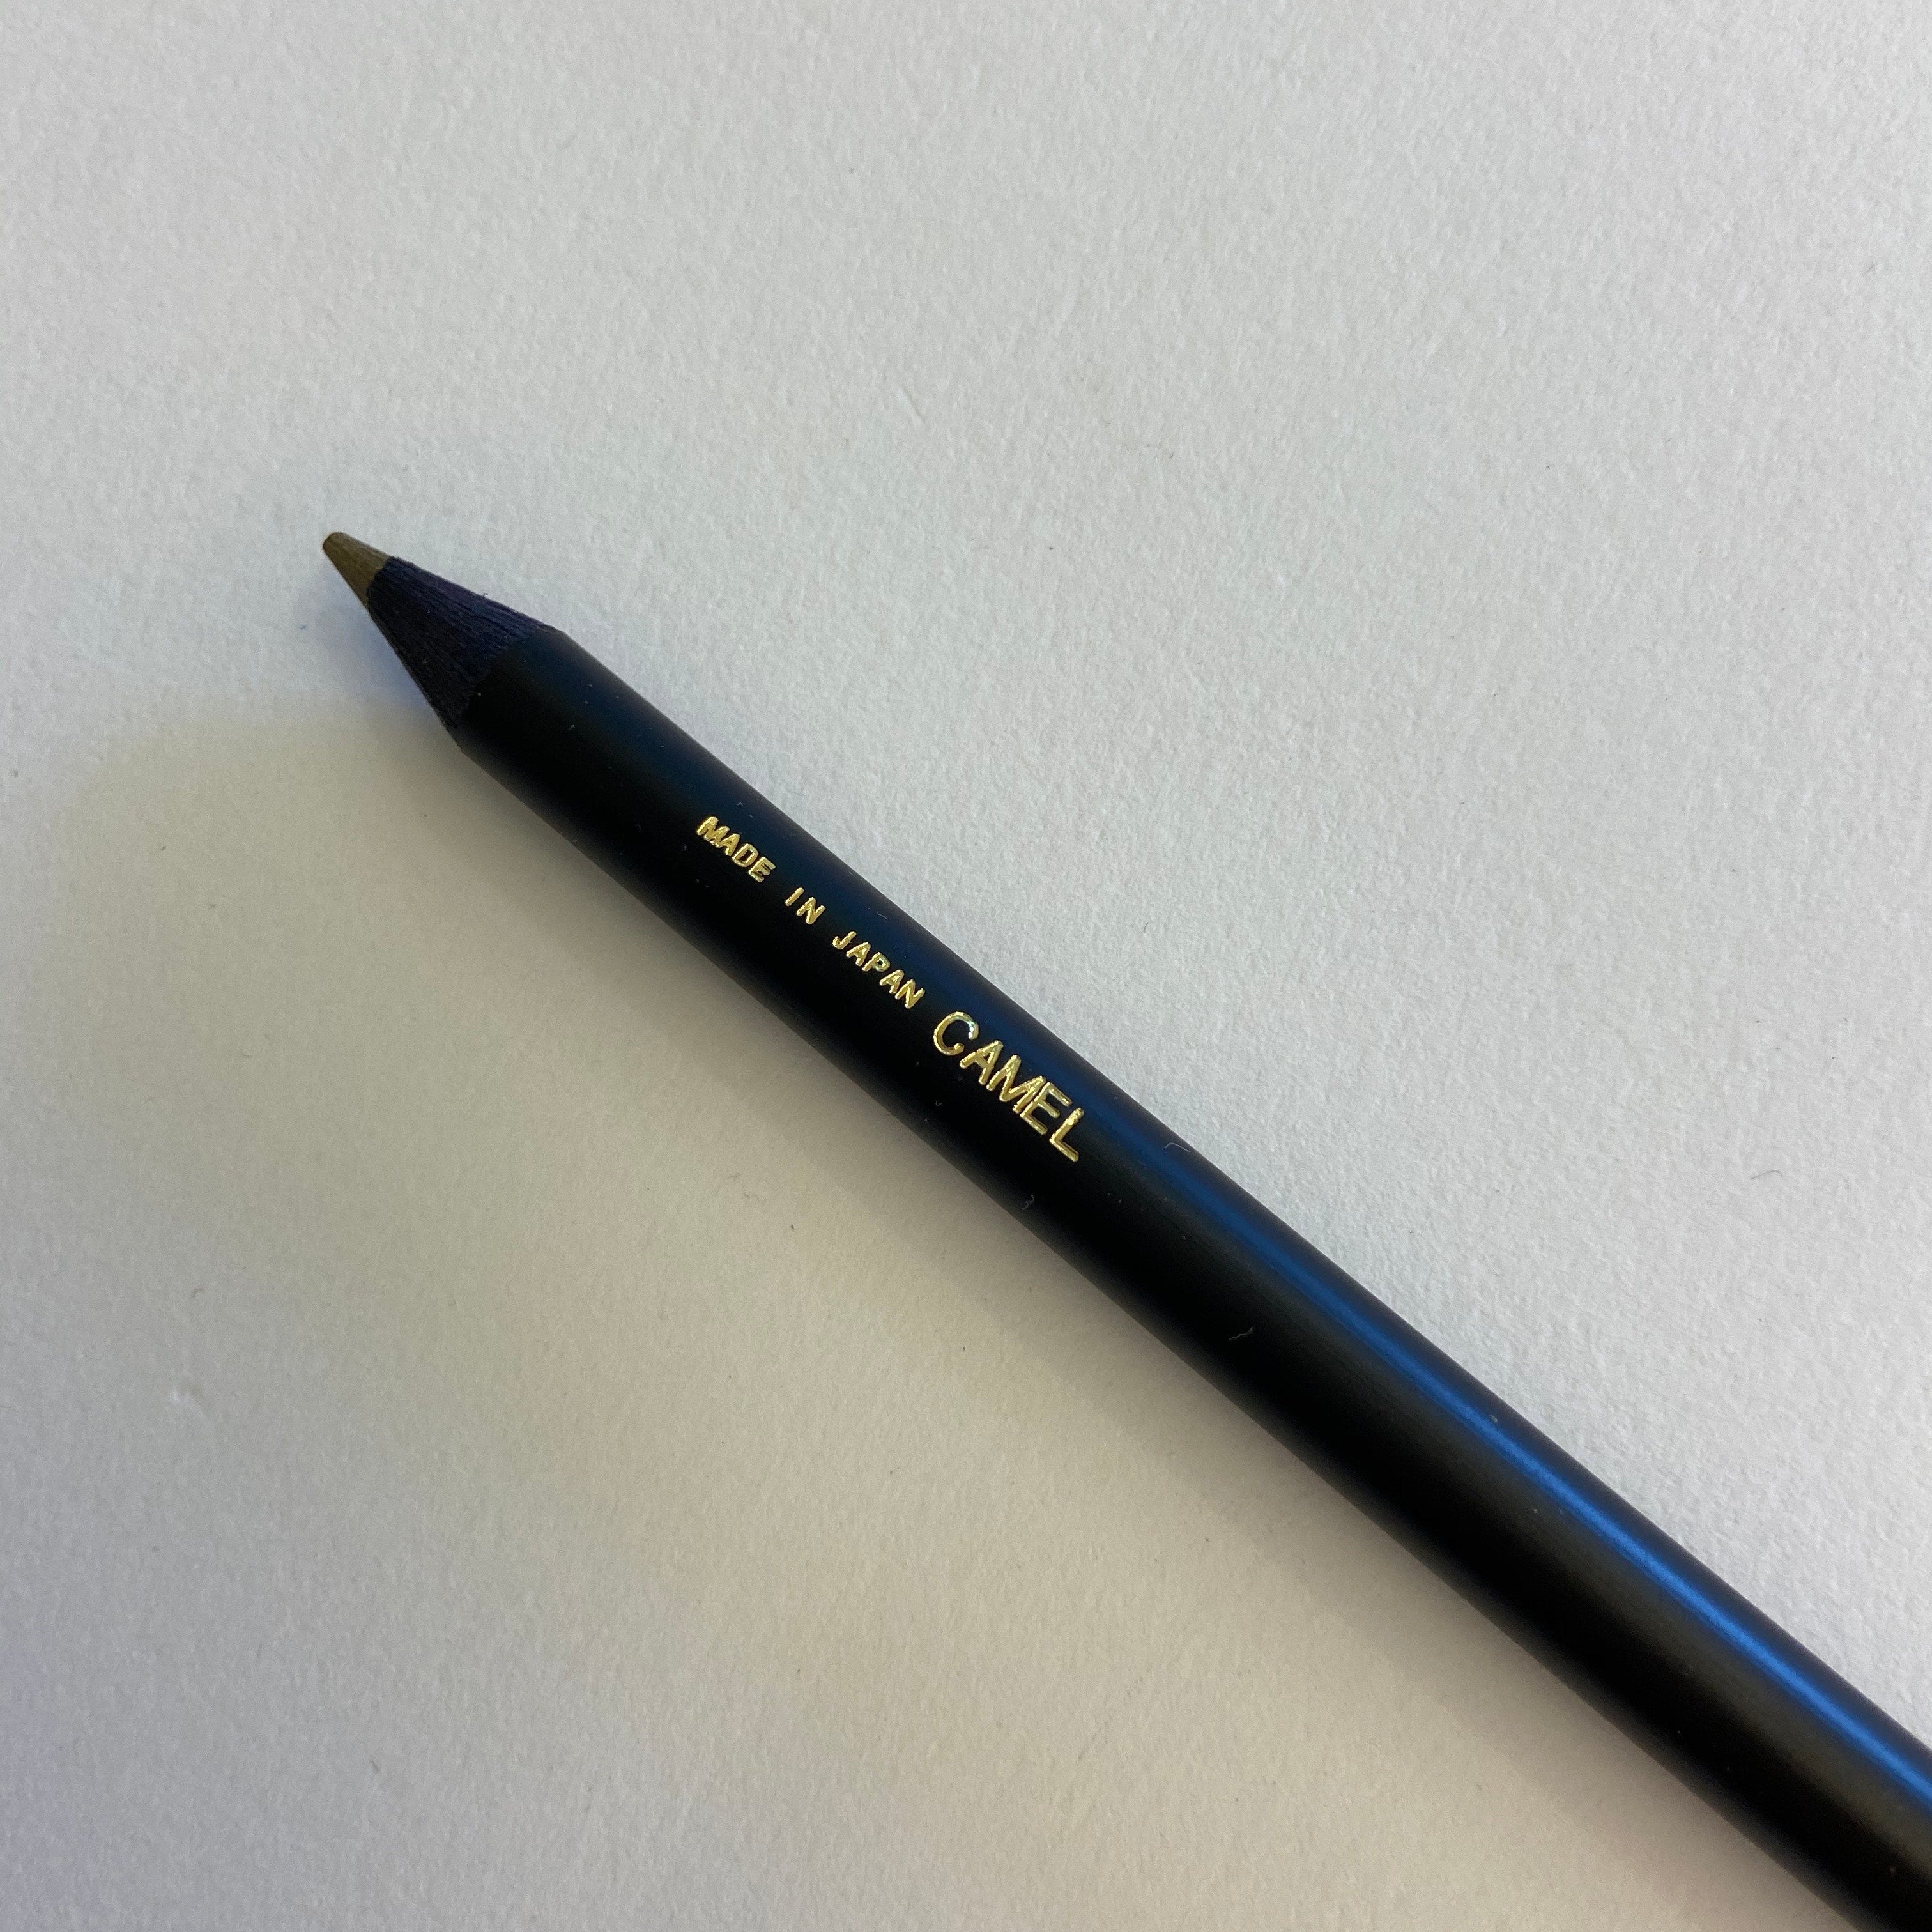 Với bút chì lưng camê, bạn sẽ có cảm giác đơn giản nhưng sang trọng khi viết. Với gam màu cam nhẹ nhàng, bút chì này đem lại cho bạn sự tự tin và phong cách khi dùng. Nhấn mạnh nét chữ và đặt điểm nhấn cho chữ viết của bạn, bút chì lưng camê sẽ giúp bạn làm điều đó một cách dễ dàng.